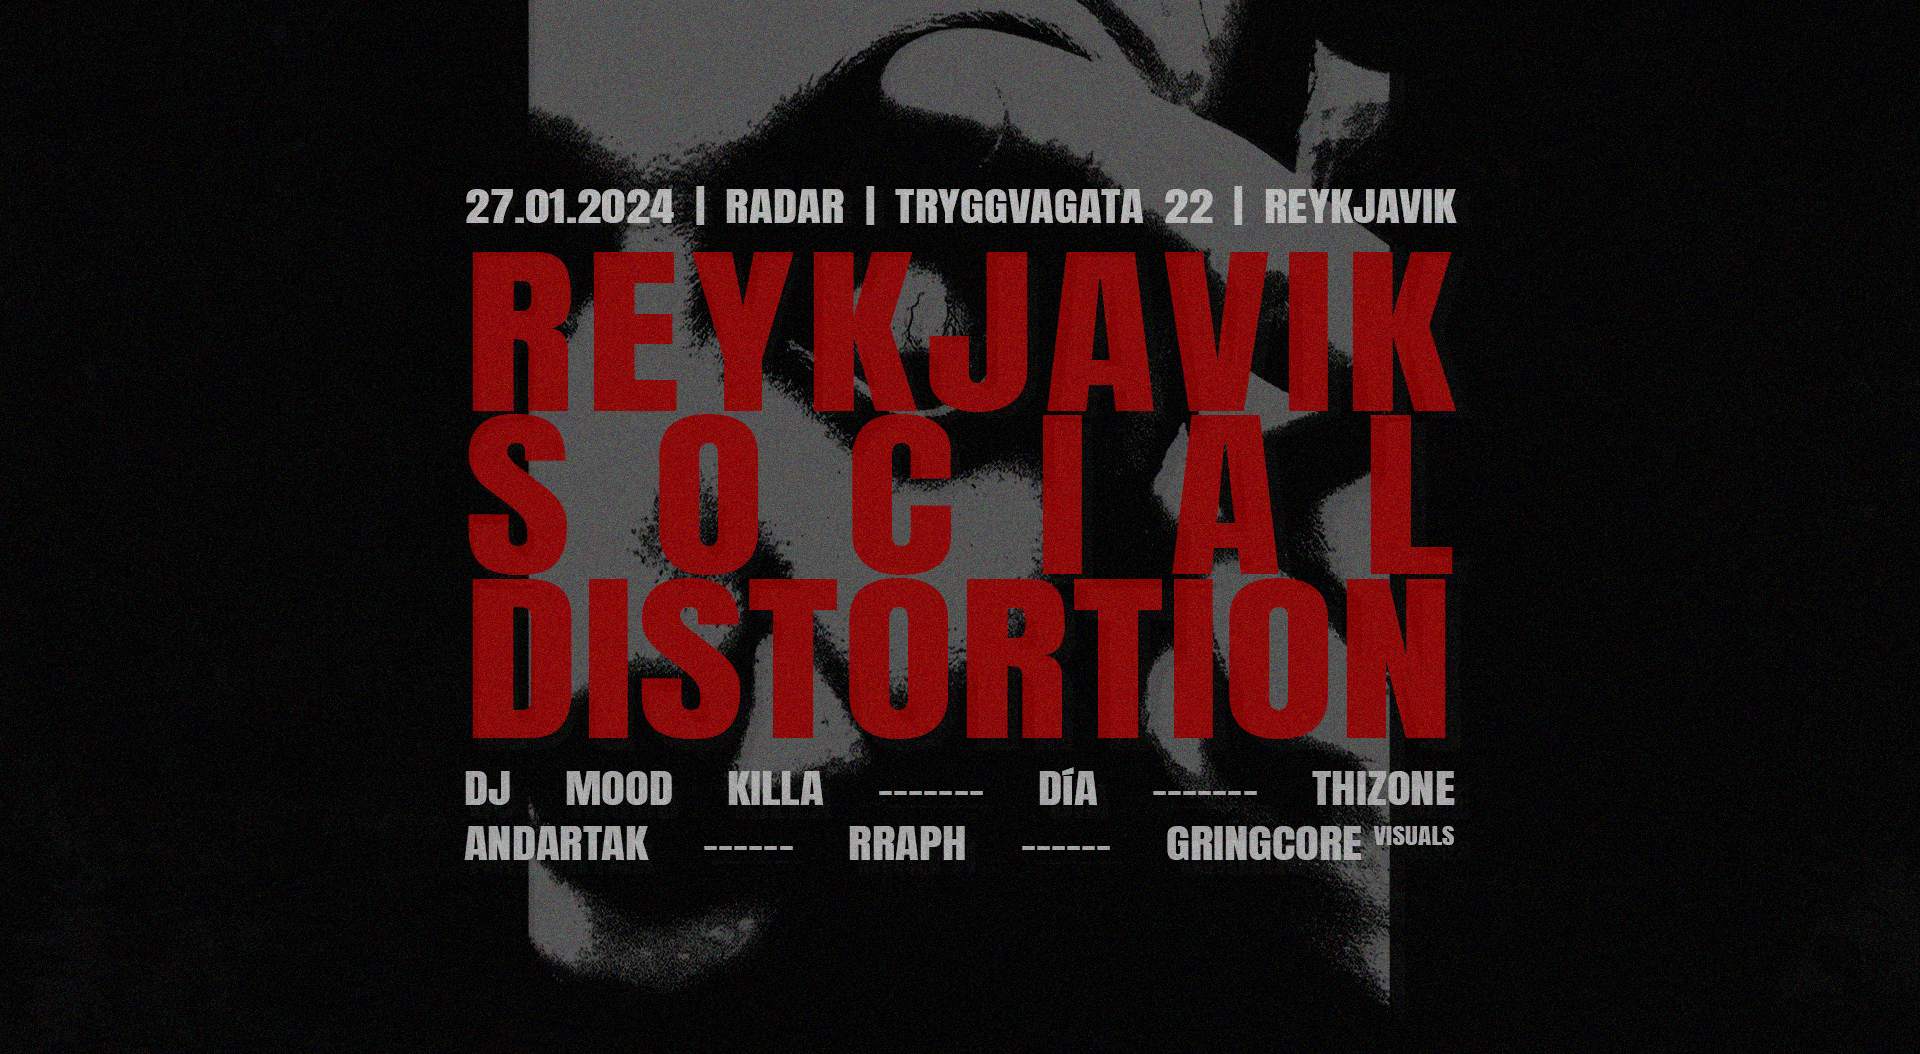 Reykjavík Social Distortion - Página frontal